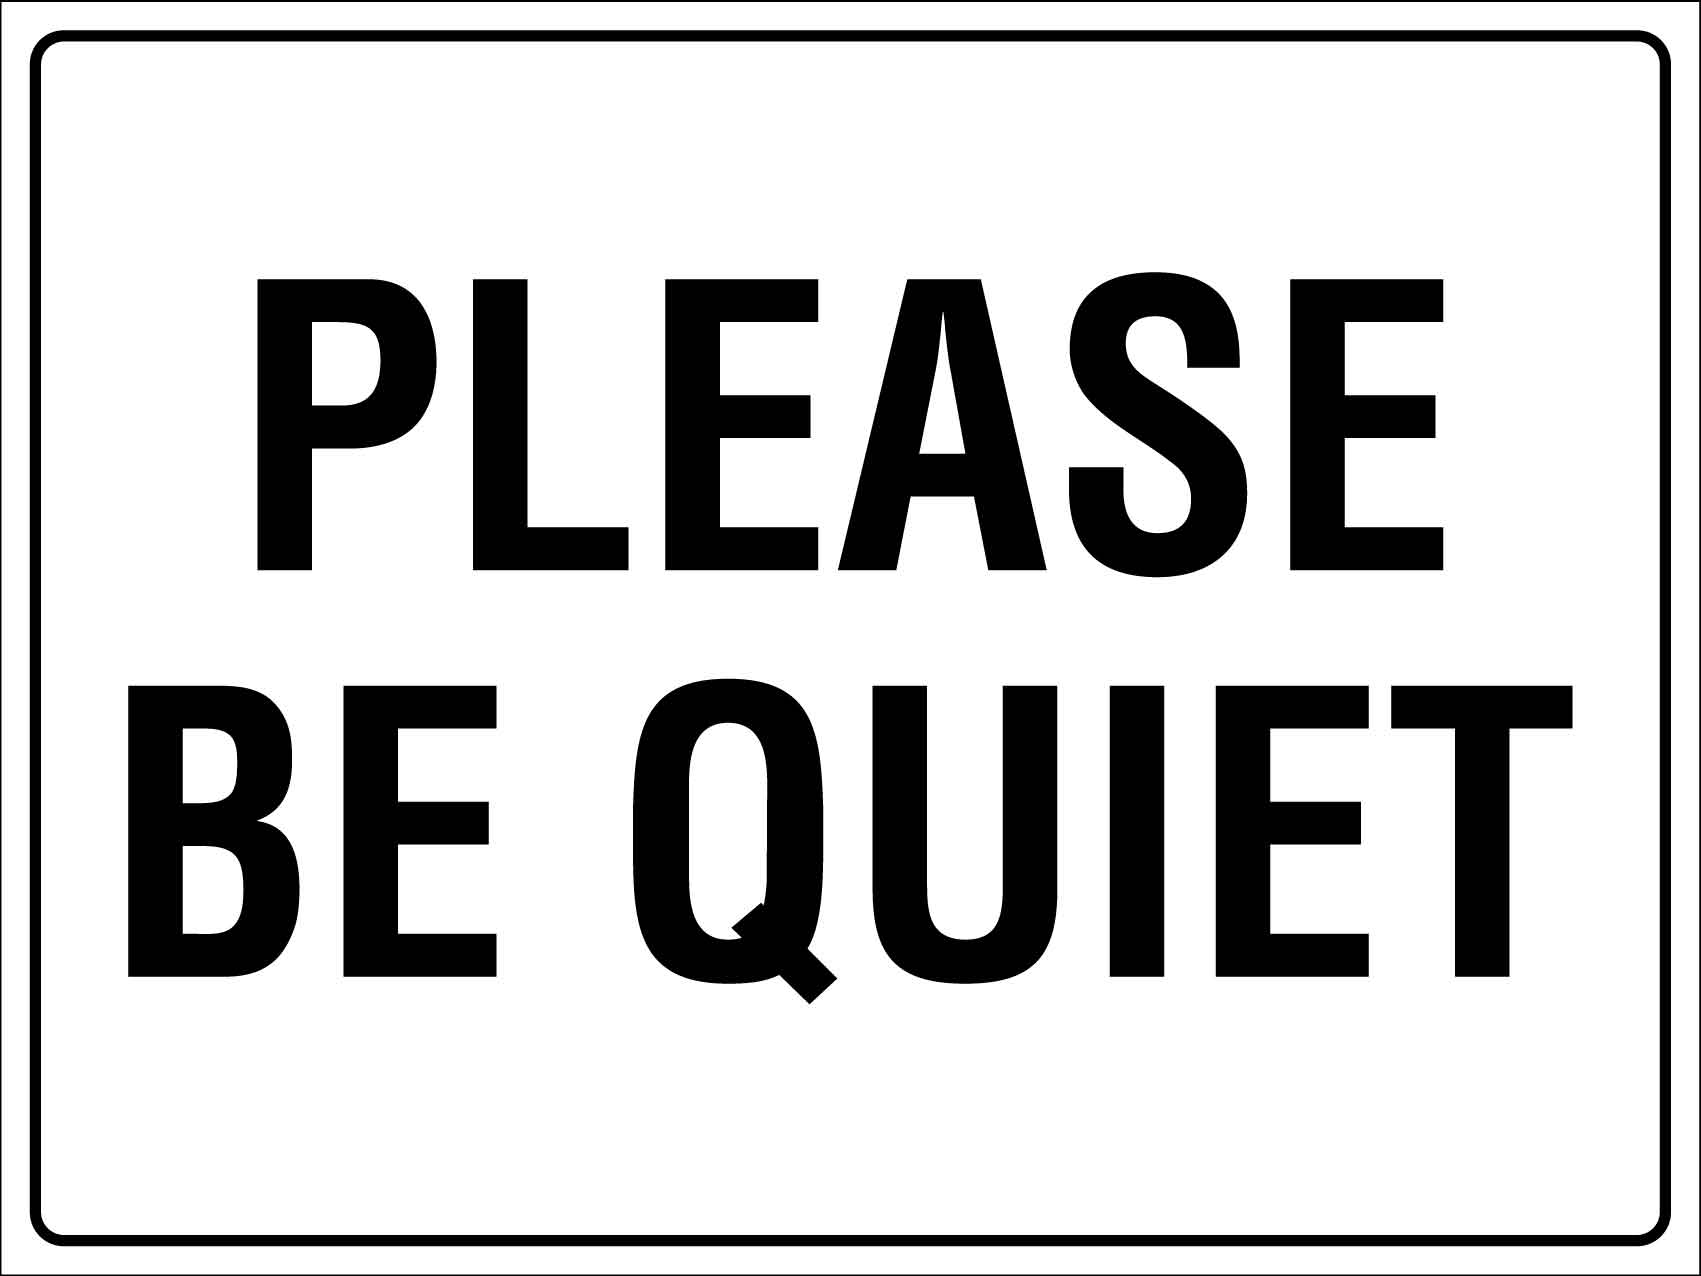 Please Be Quiet